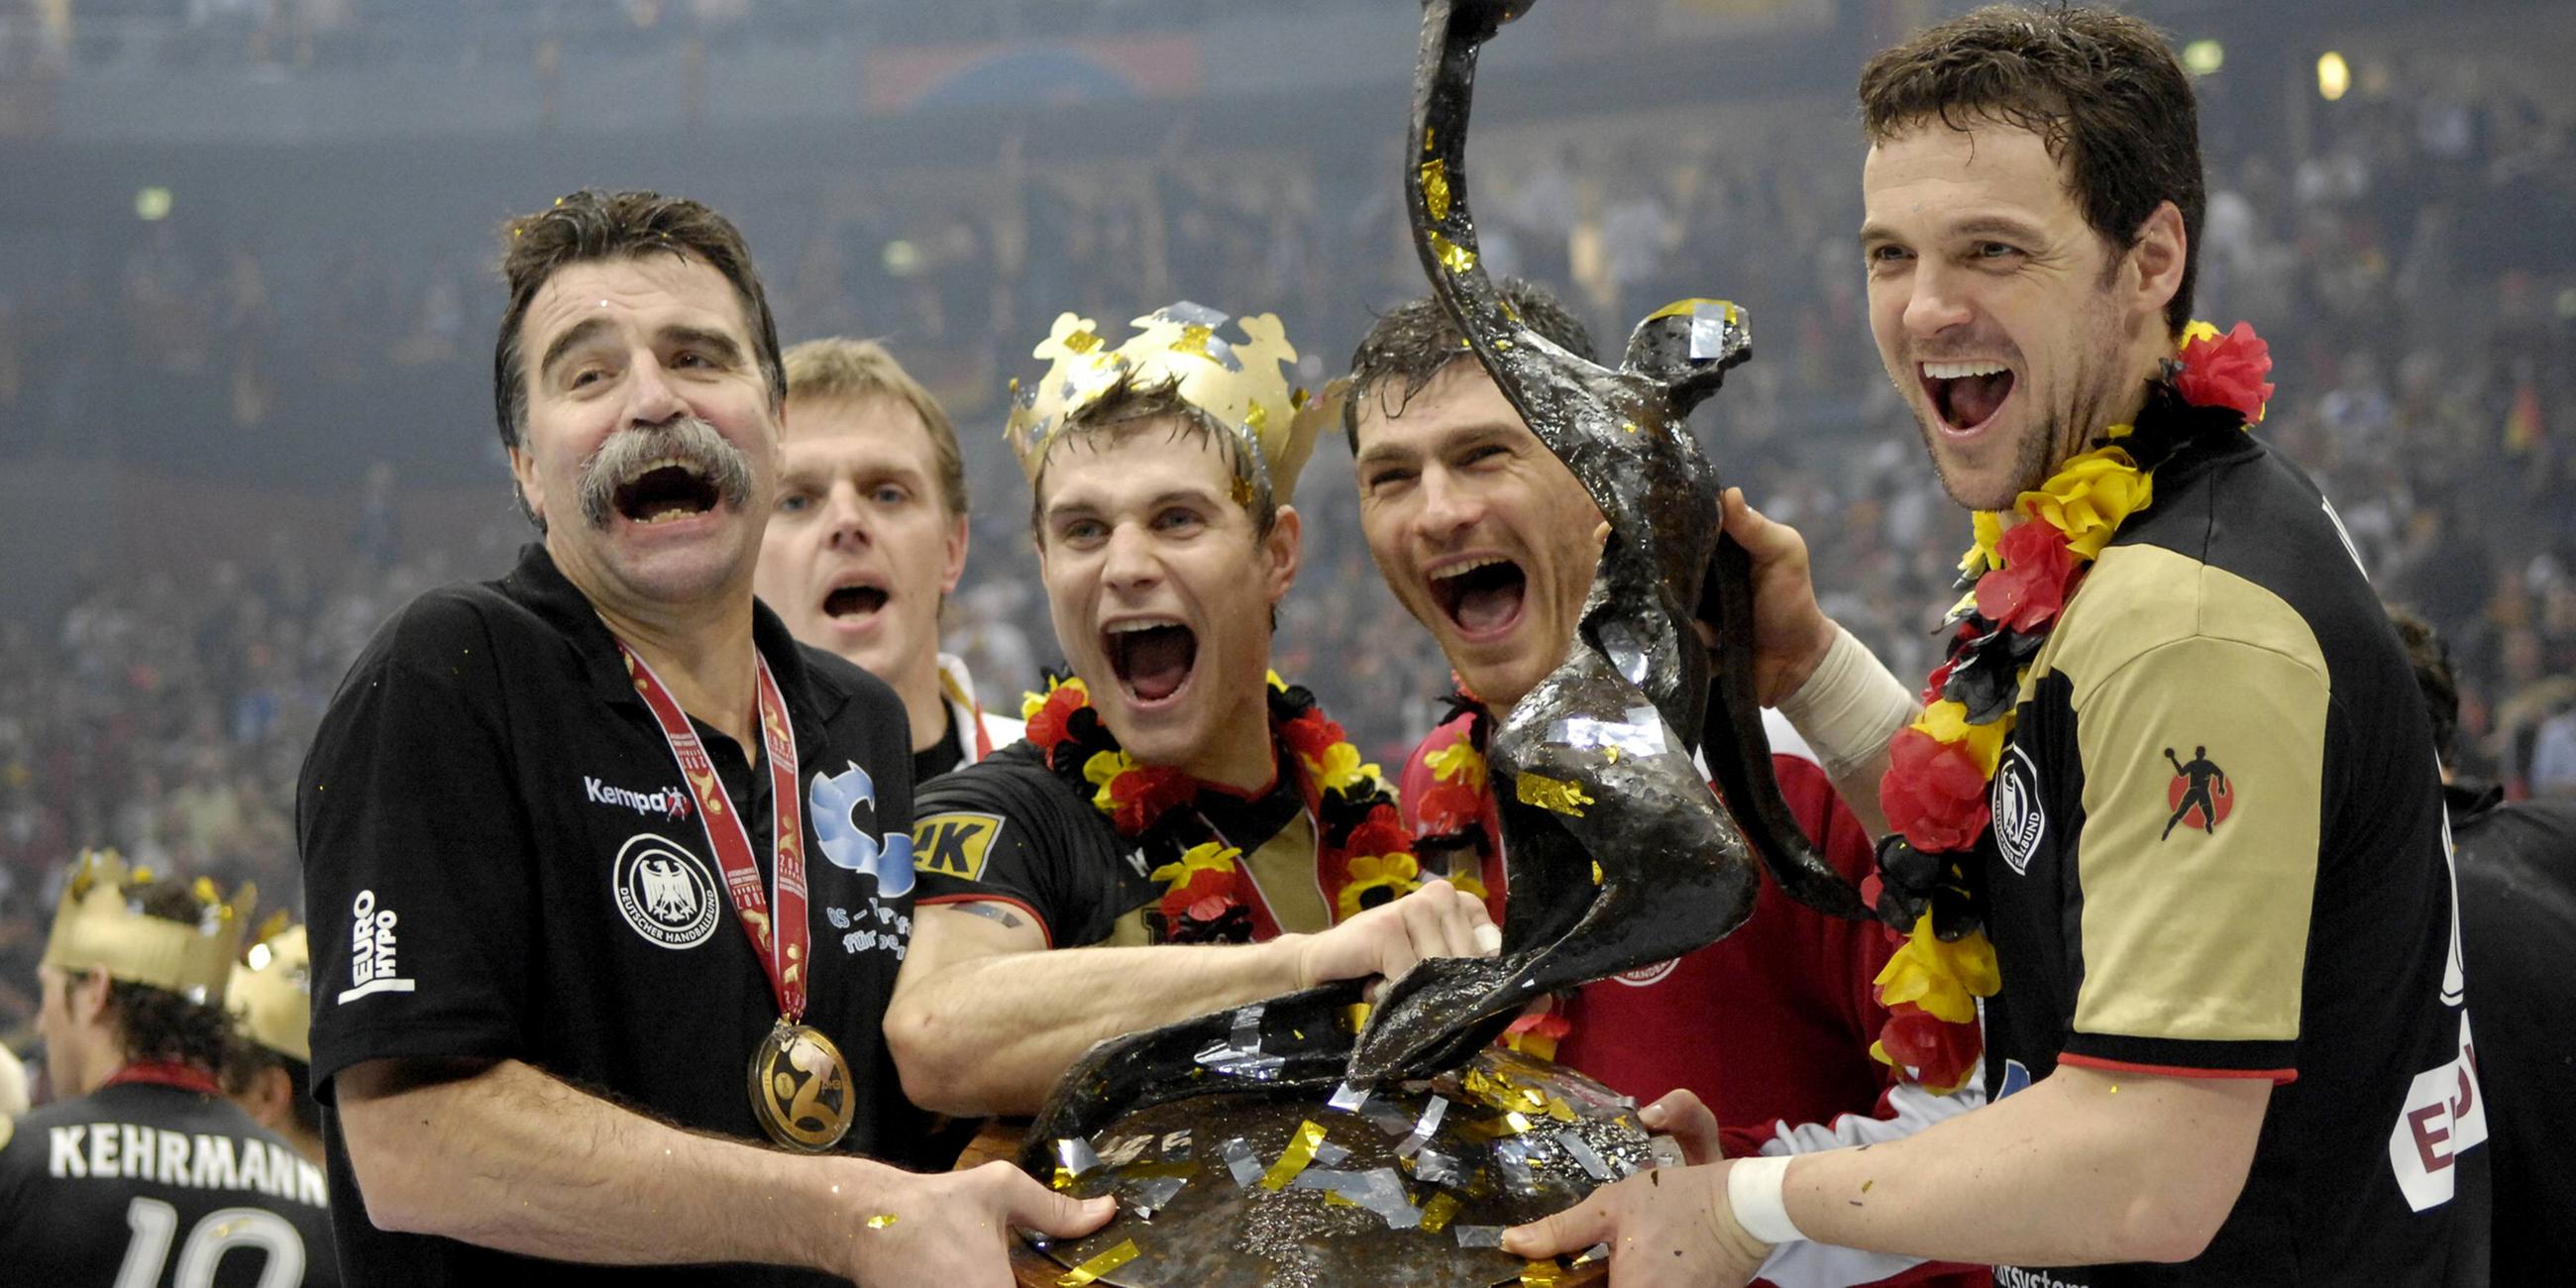 Für Bundestrainer Heiner Brand (links) war es die Krönung, neben ihm feierten Martin Heuberger, Michael Kraus, Fritz und Kapitän das Handballwunder.